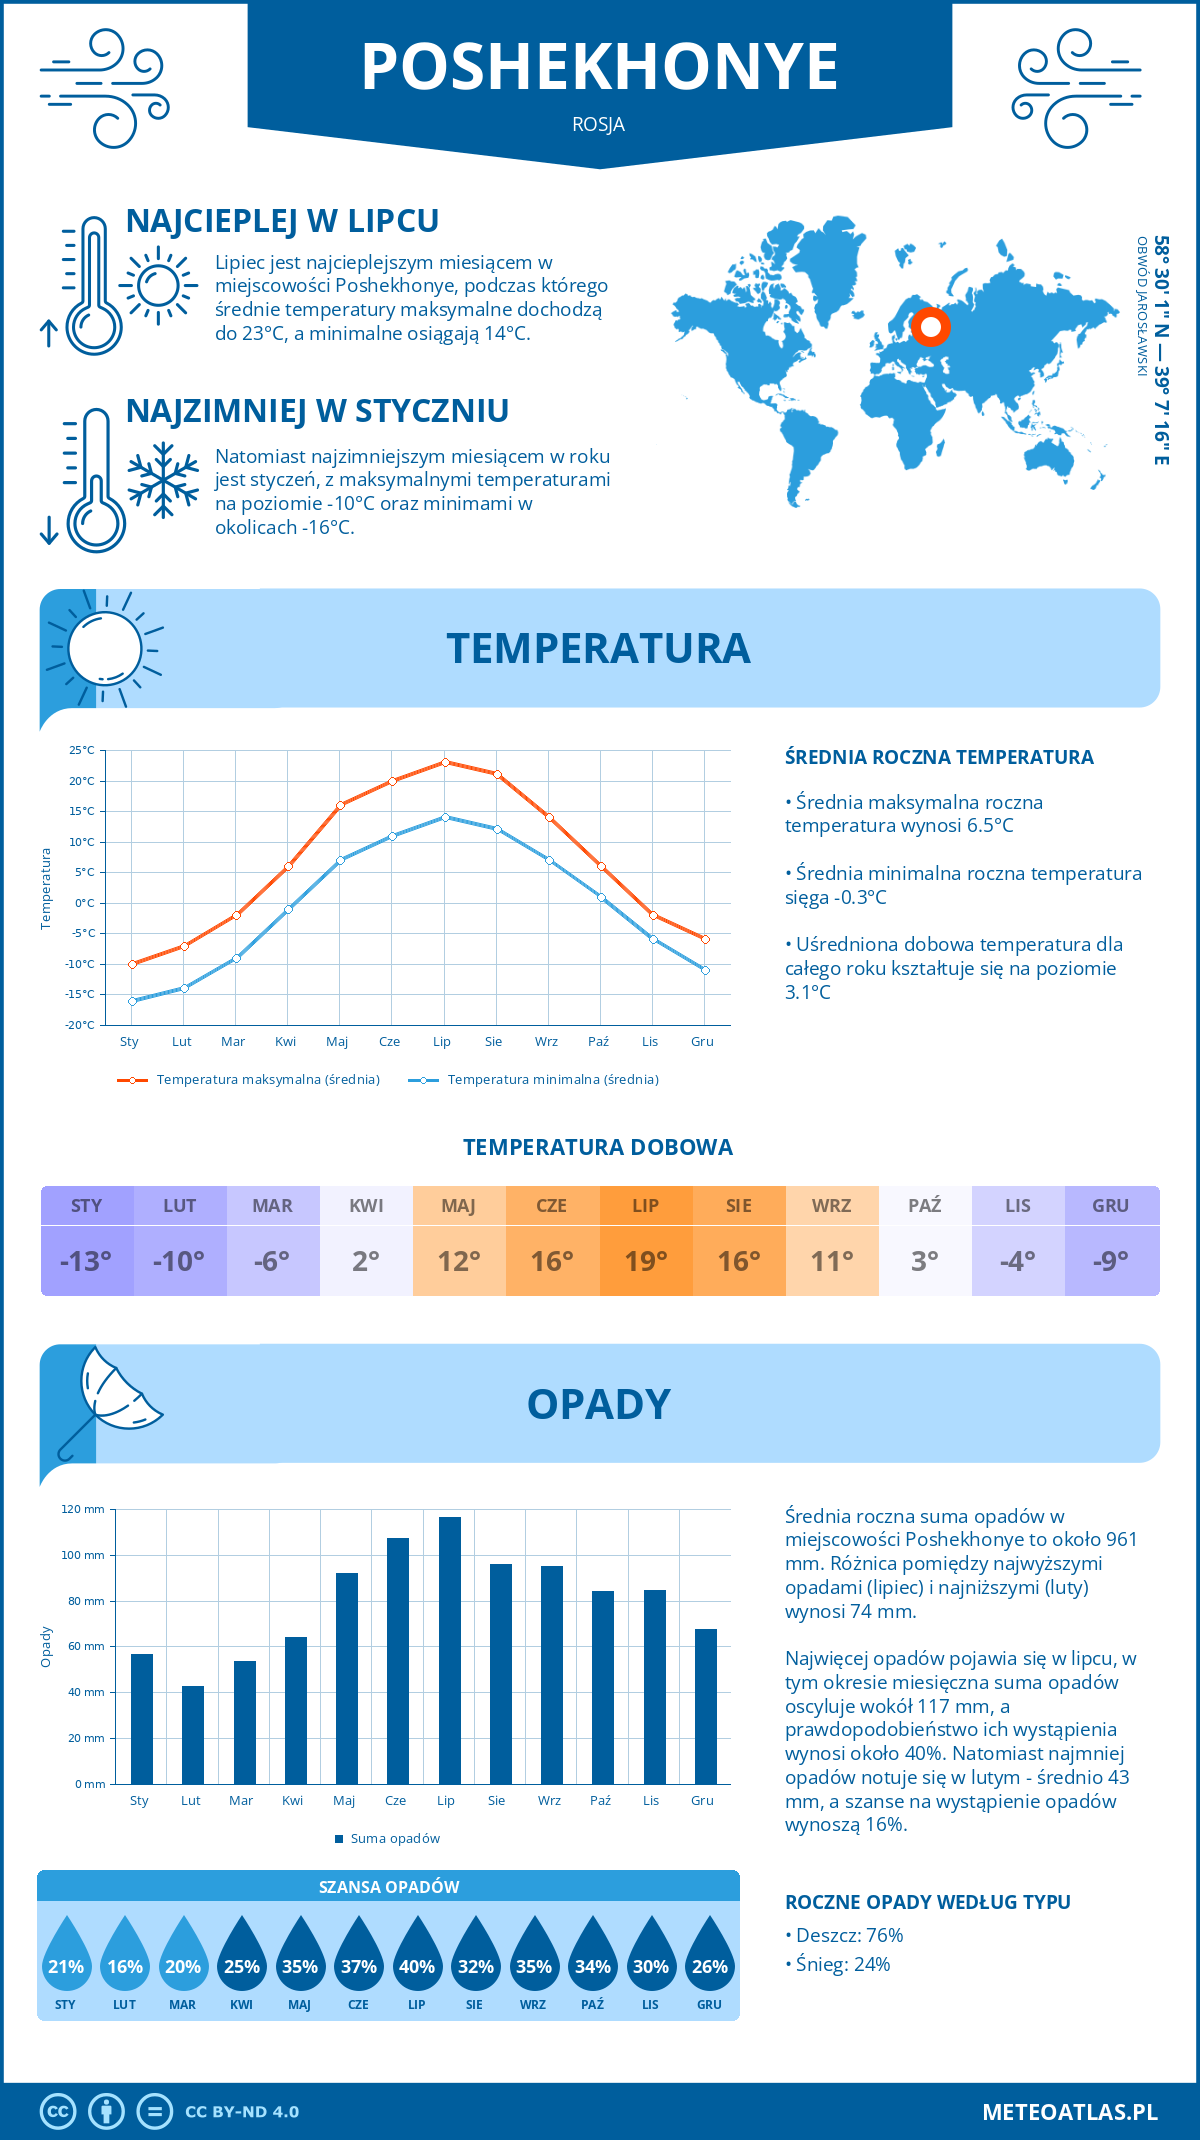 Pogoda Poshekhonye (Rosja). Temperatura oraz opady.